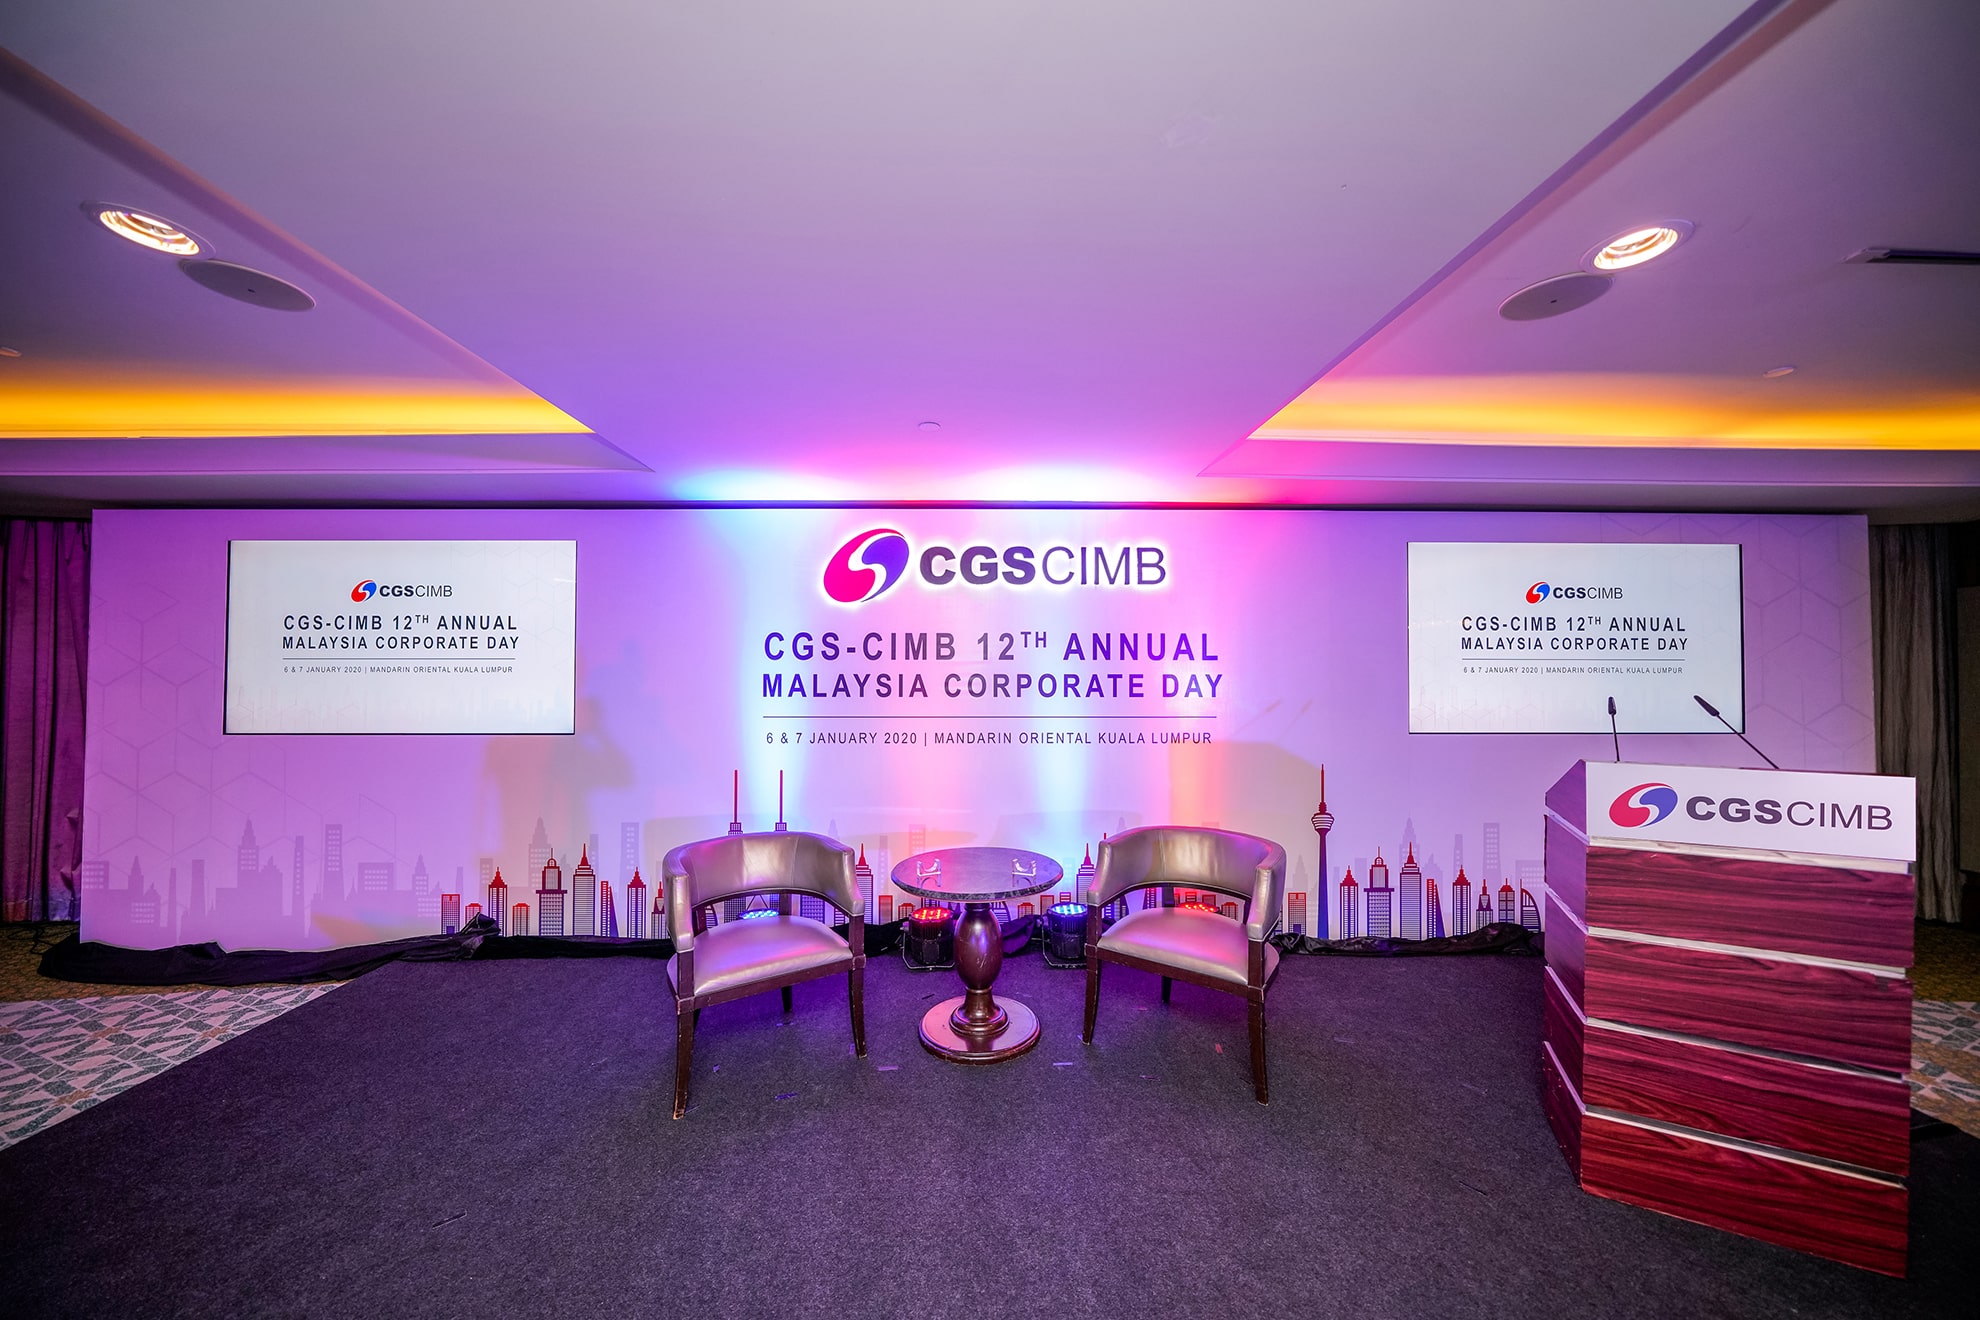 CGS-CIMB 12th Annual Malaysia Corporate Day